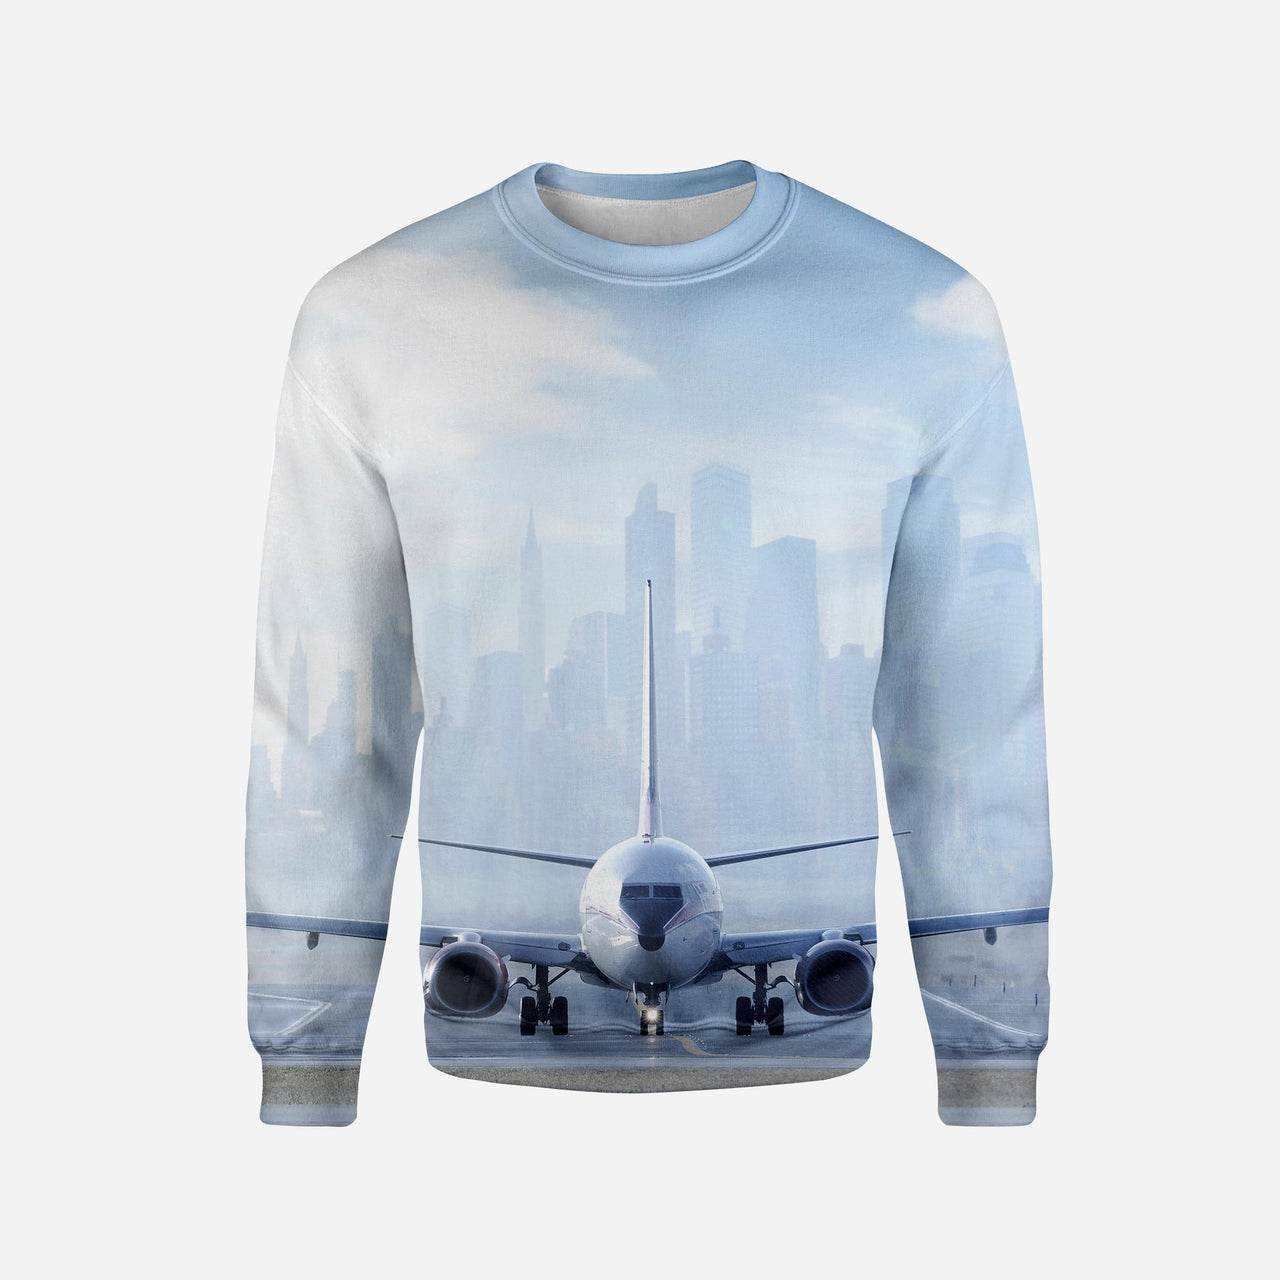 Boeing 737 & City View Behind Printed 3D Sweatshirts